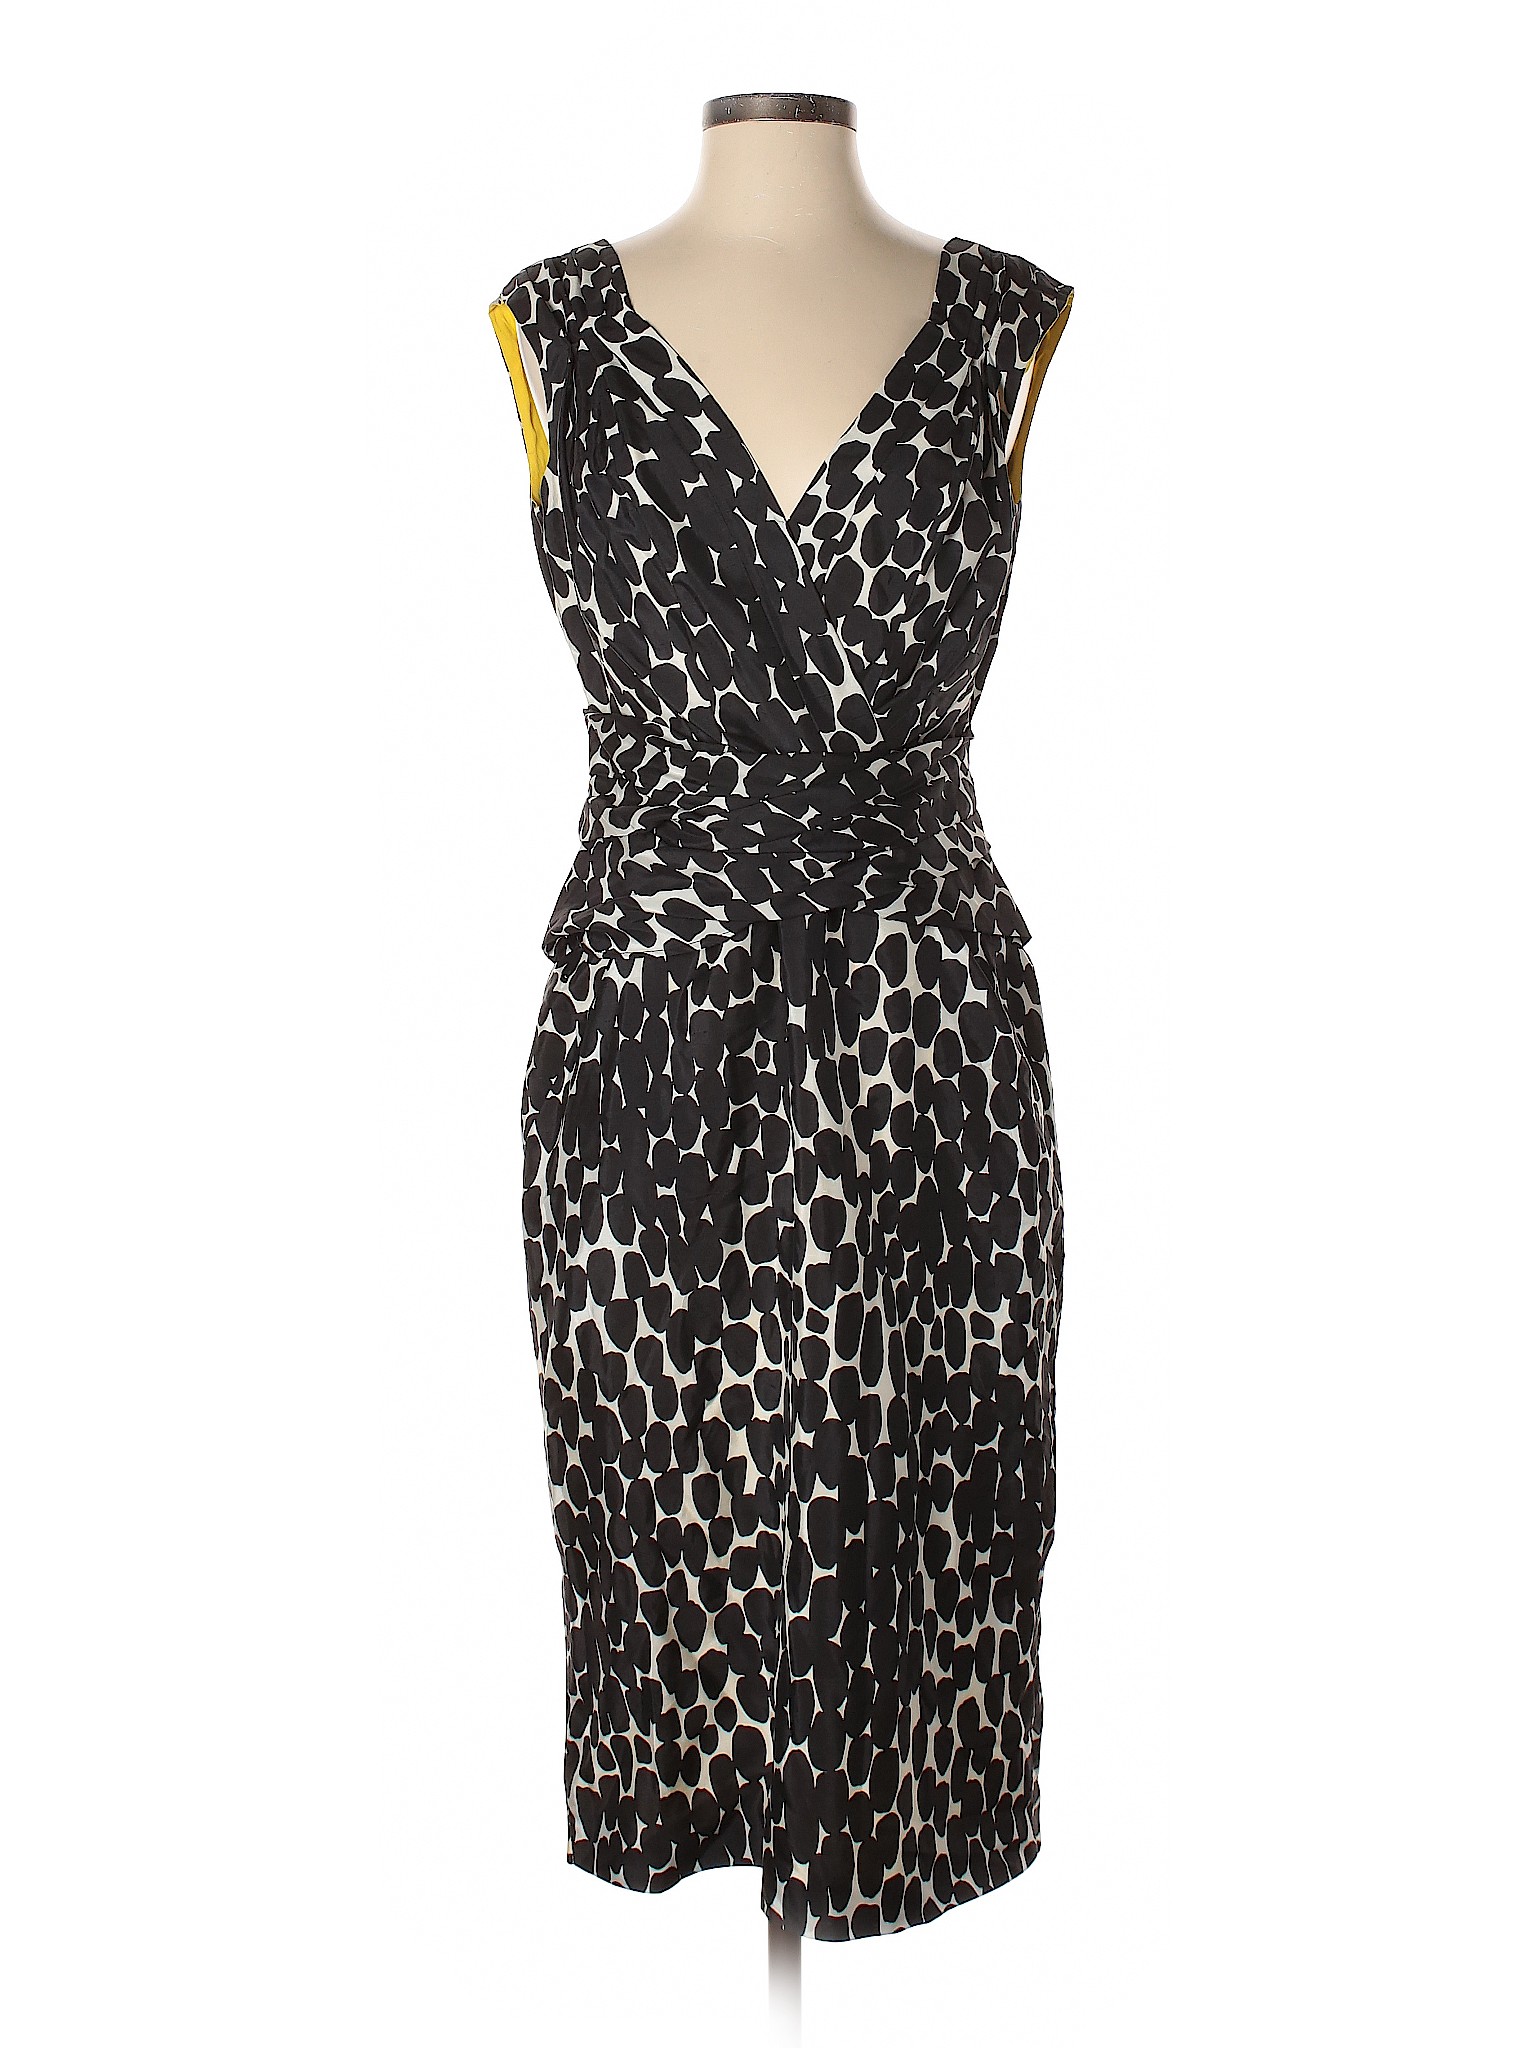 Gucci 100% Silk Print Black Casual Dress Size 44 (IT) - 82% off | thredUP